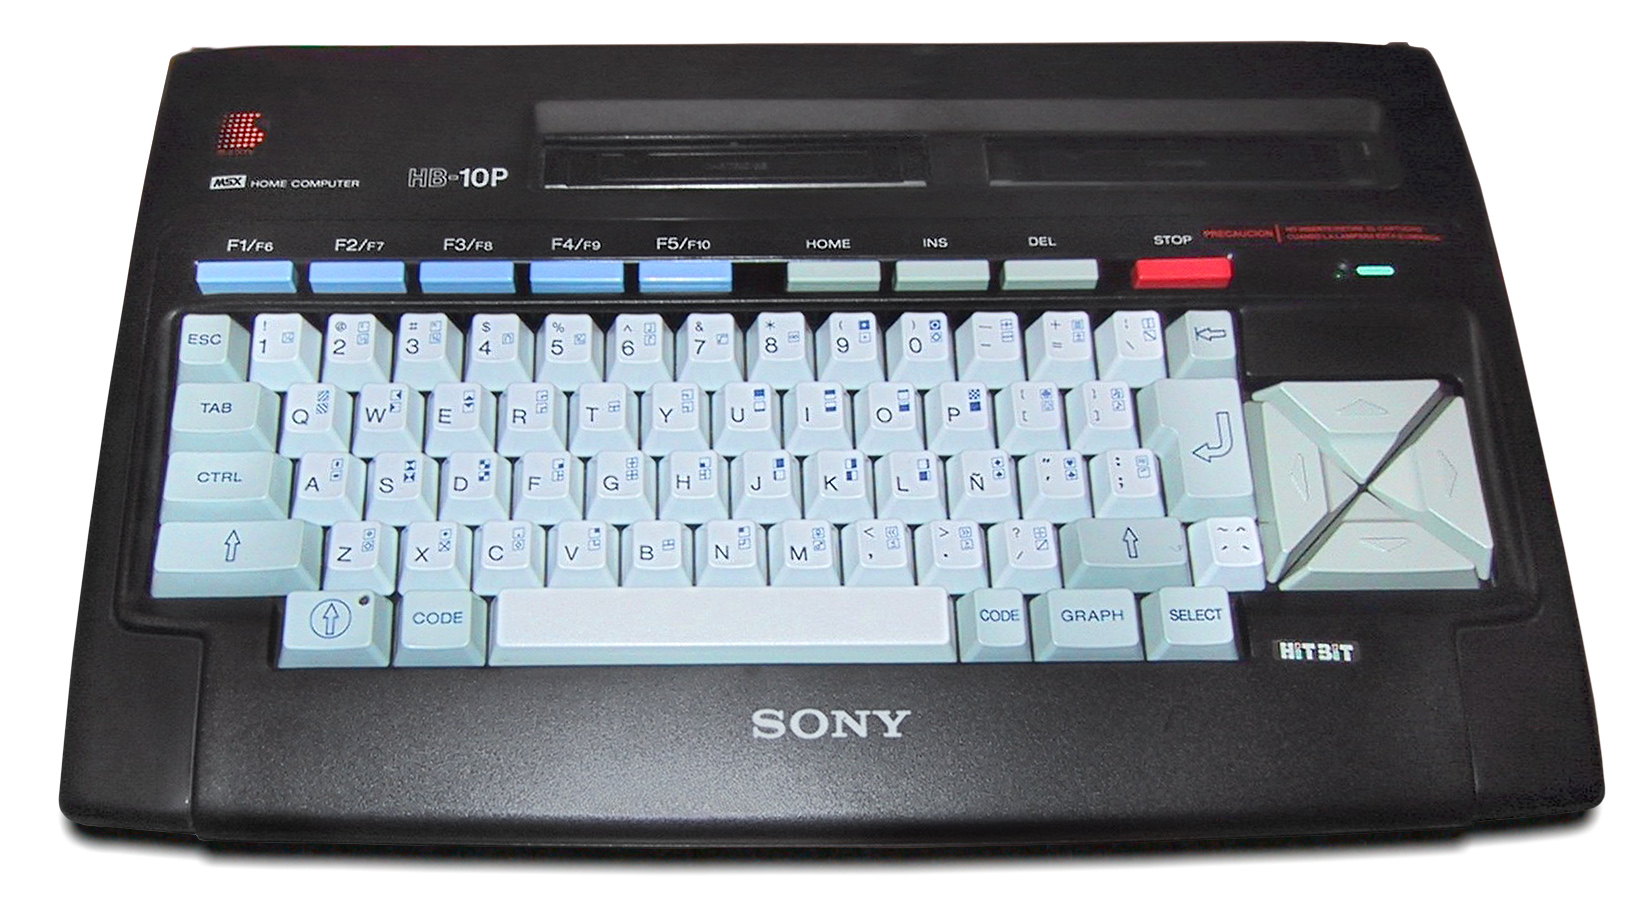 Modèle Sony MSX HitBit-10-P / HB-10P.